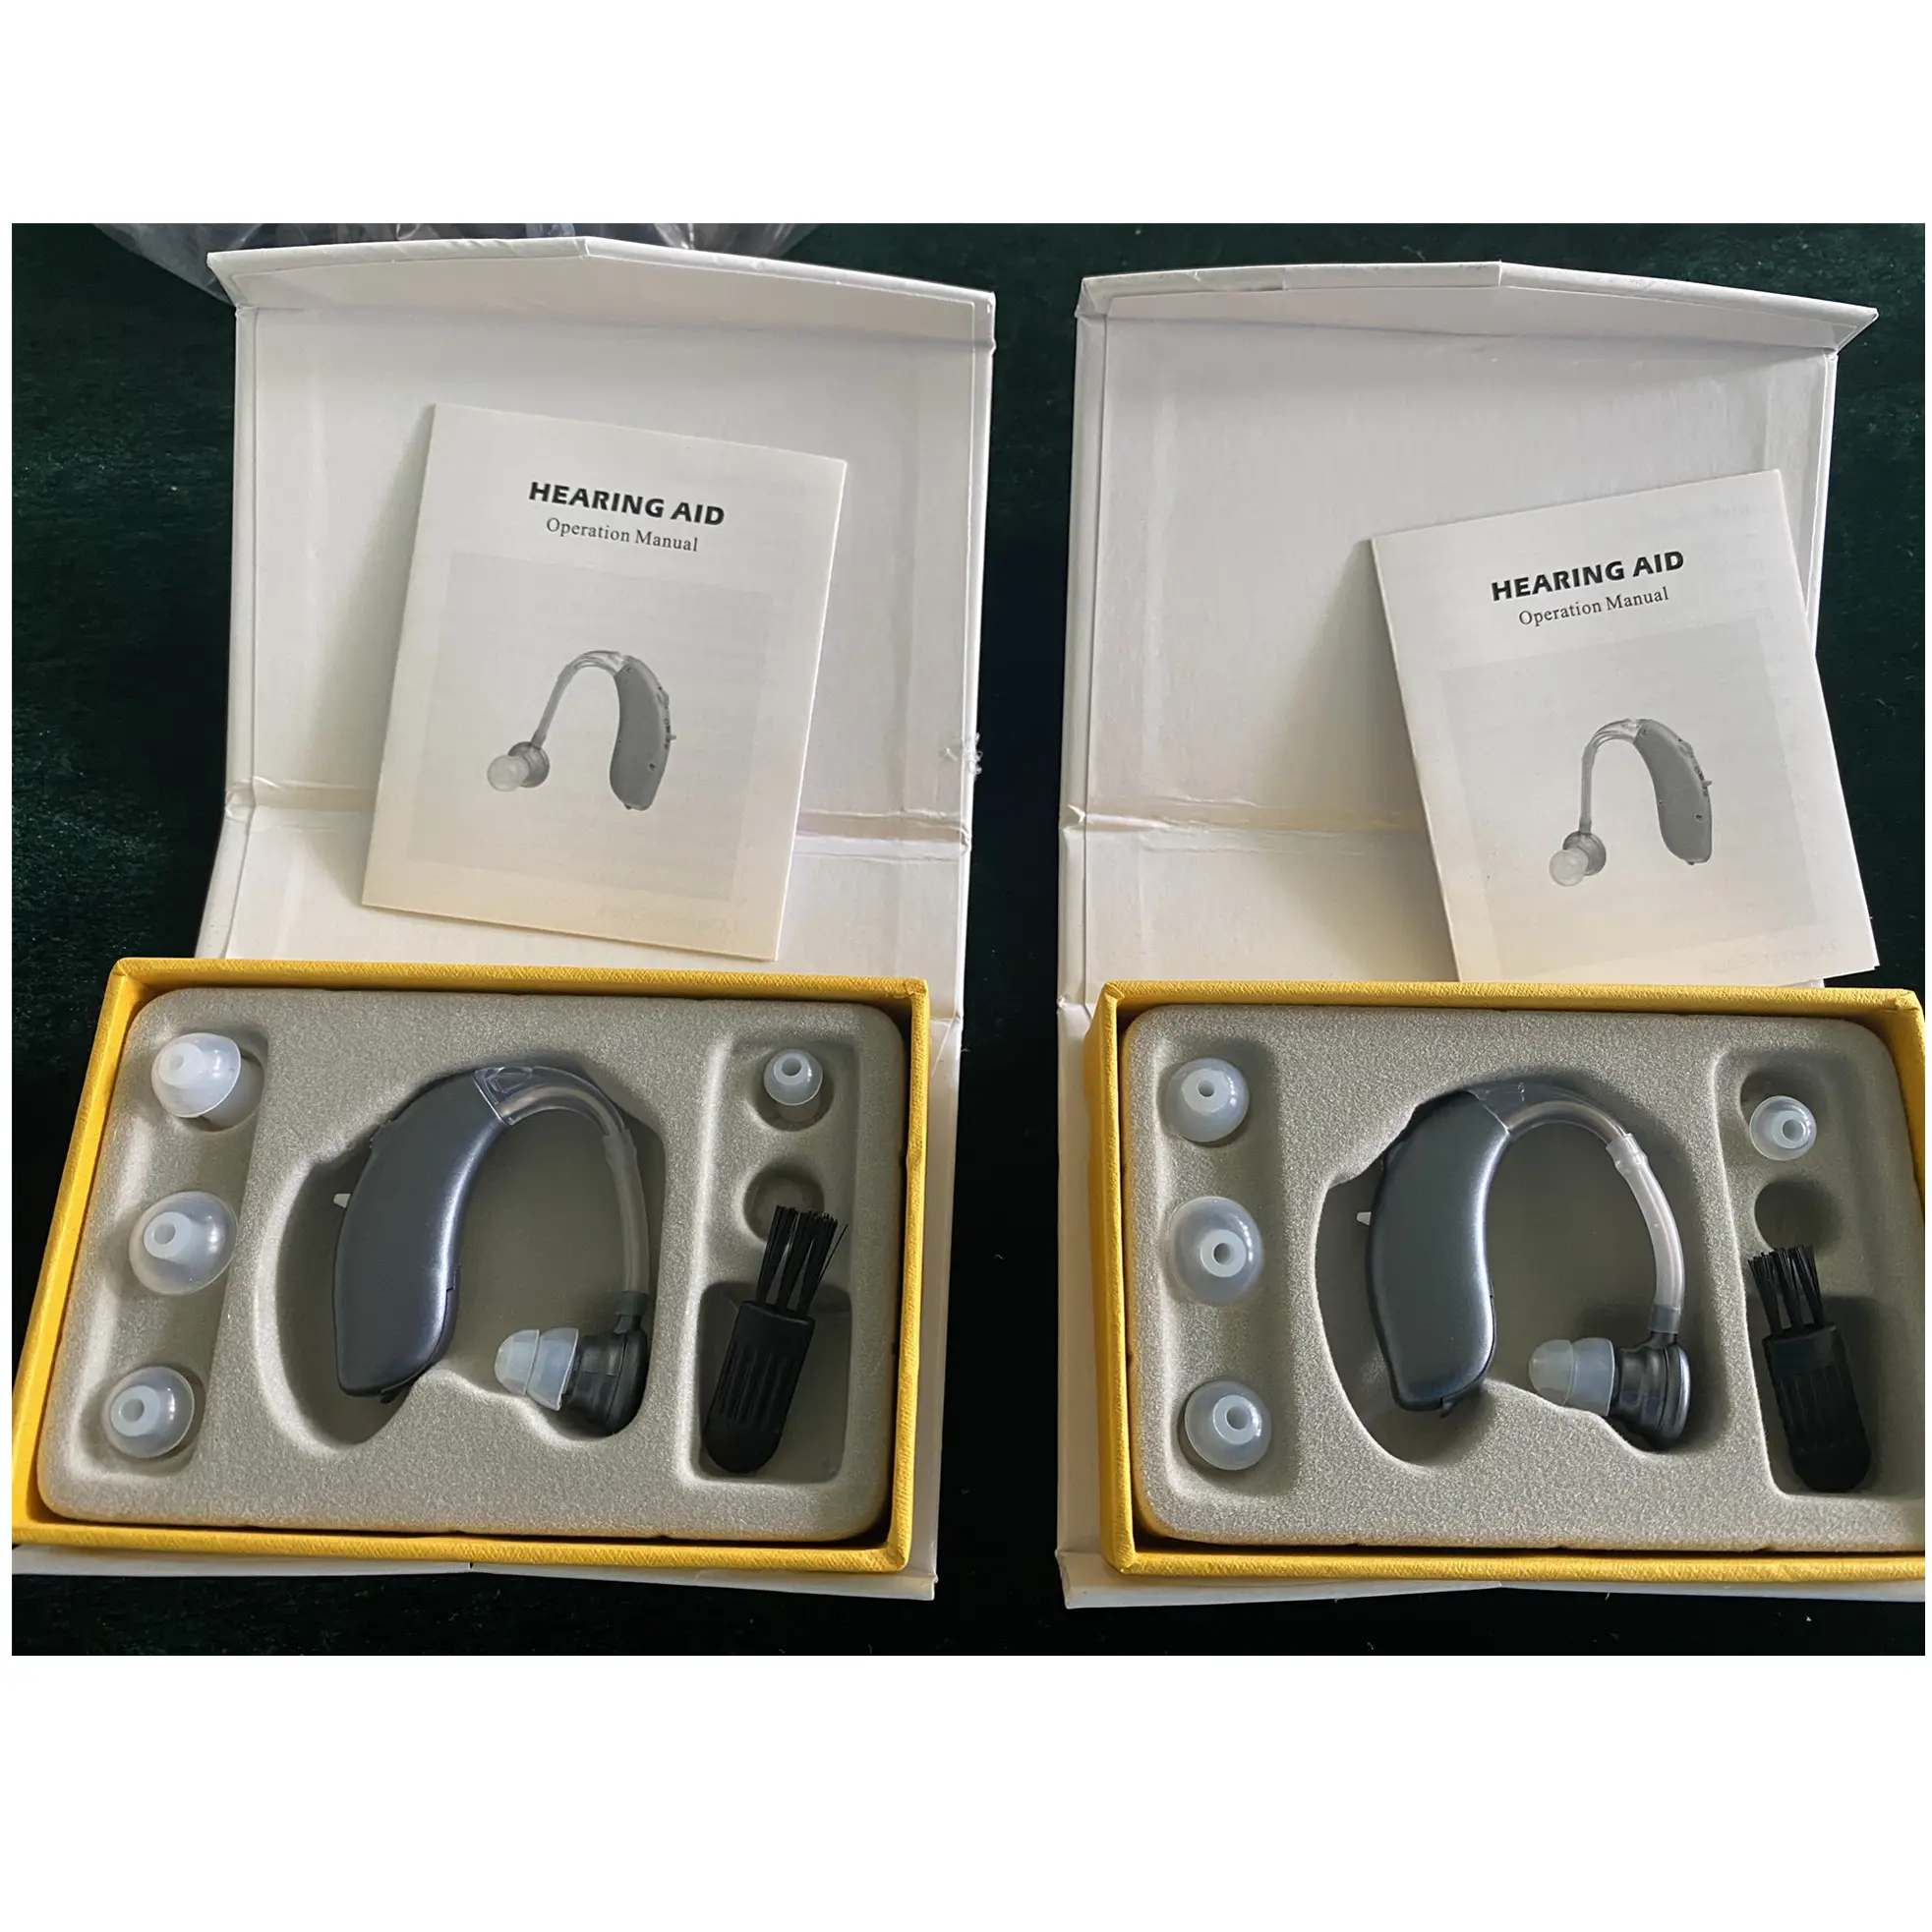 G20B BTE слуховой аппарат Регулируемый усилитель звука audifono para sordera усилитель слуха низкая стоимость лучшая для продажи